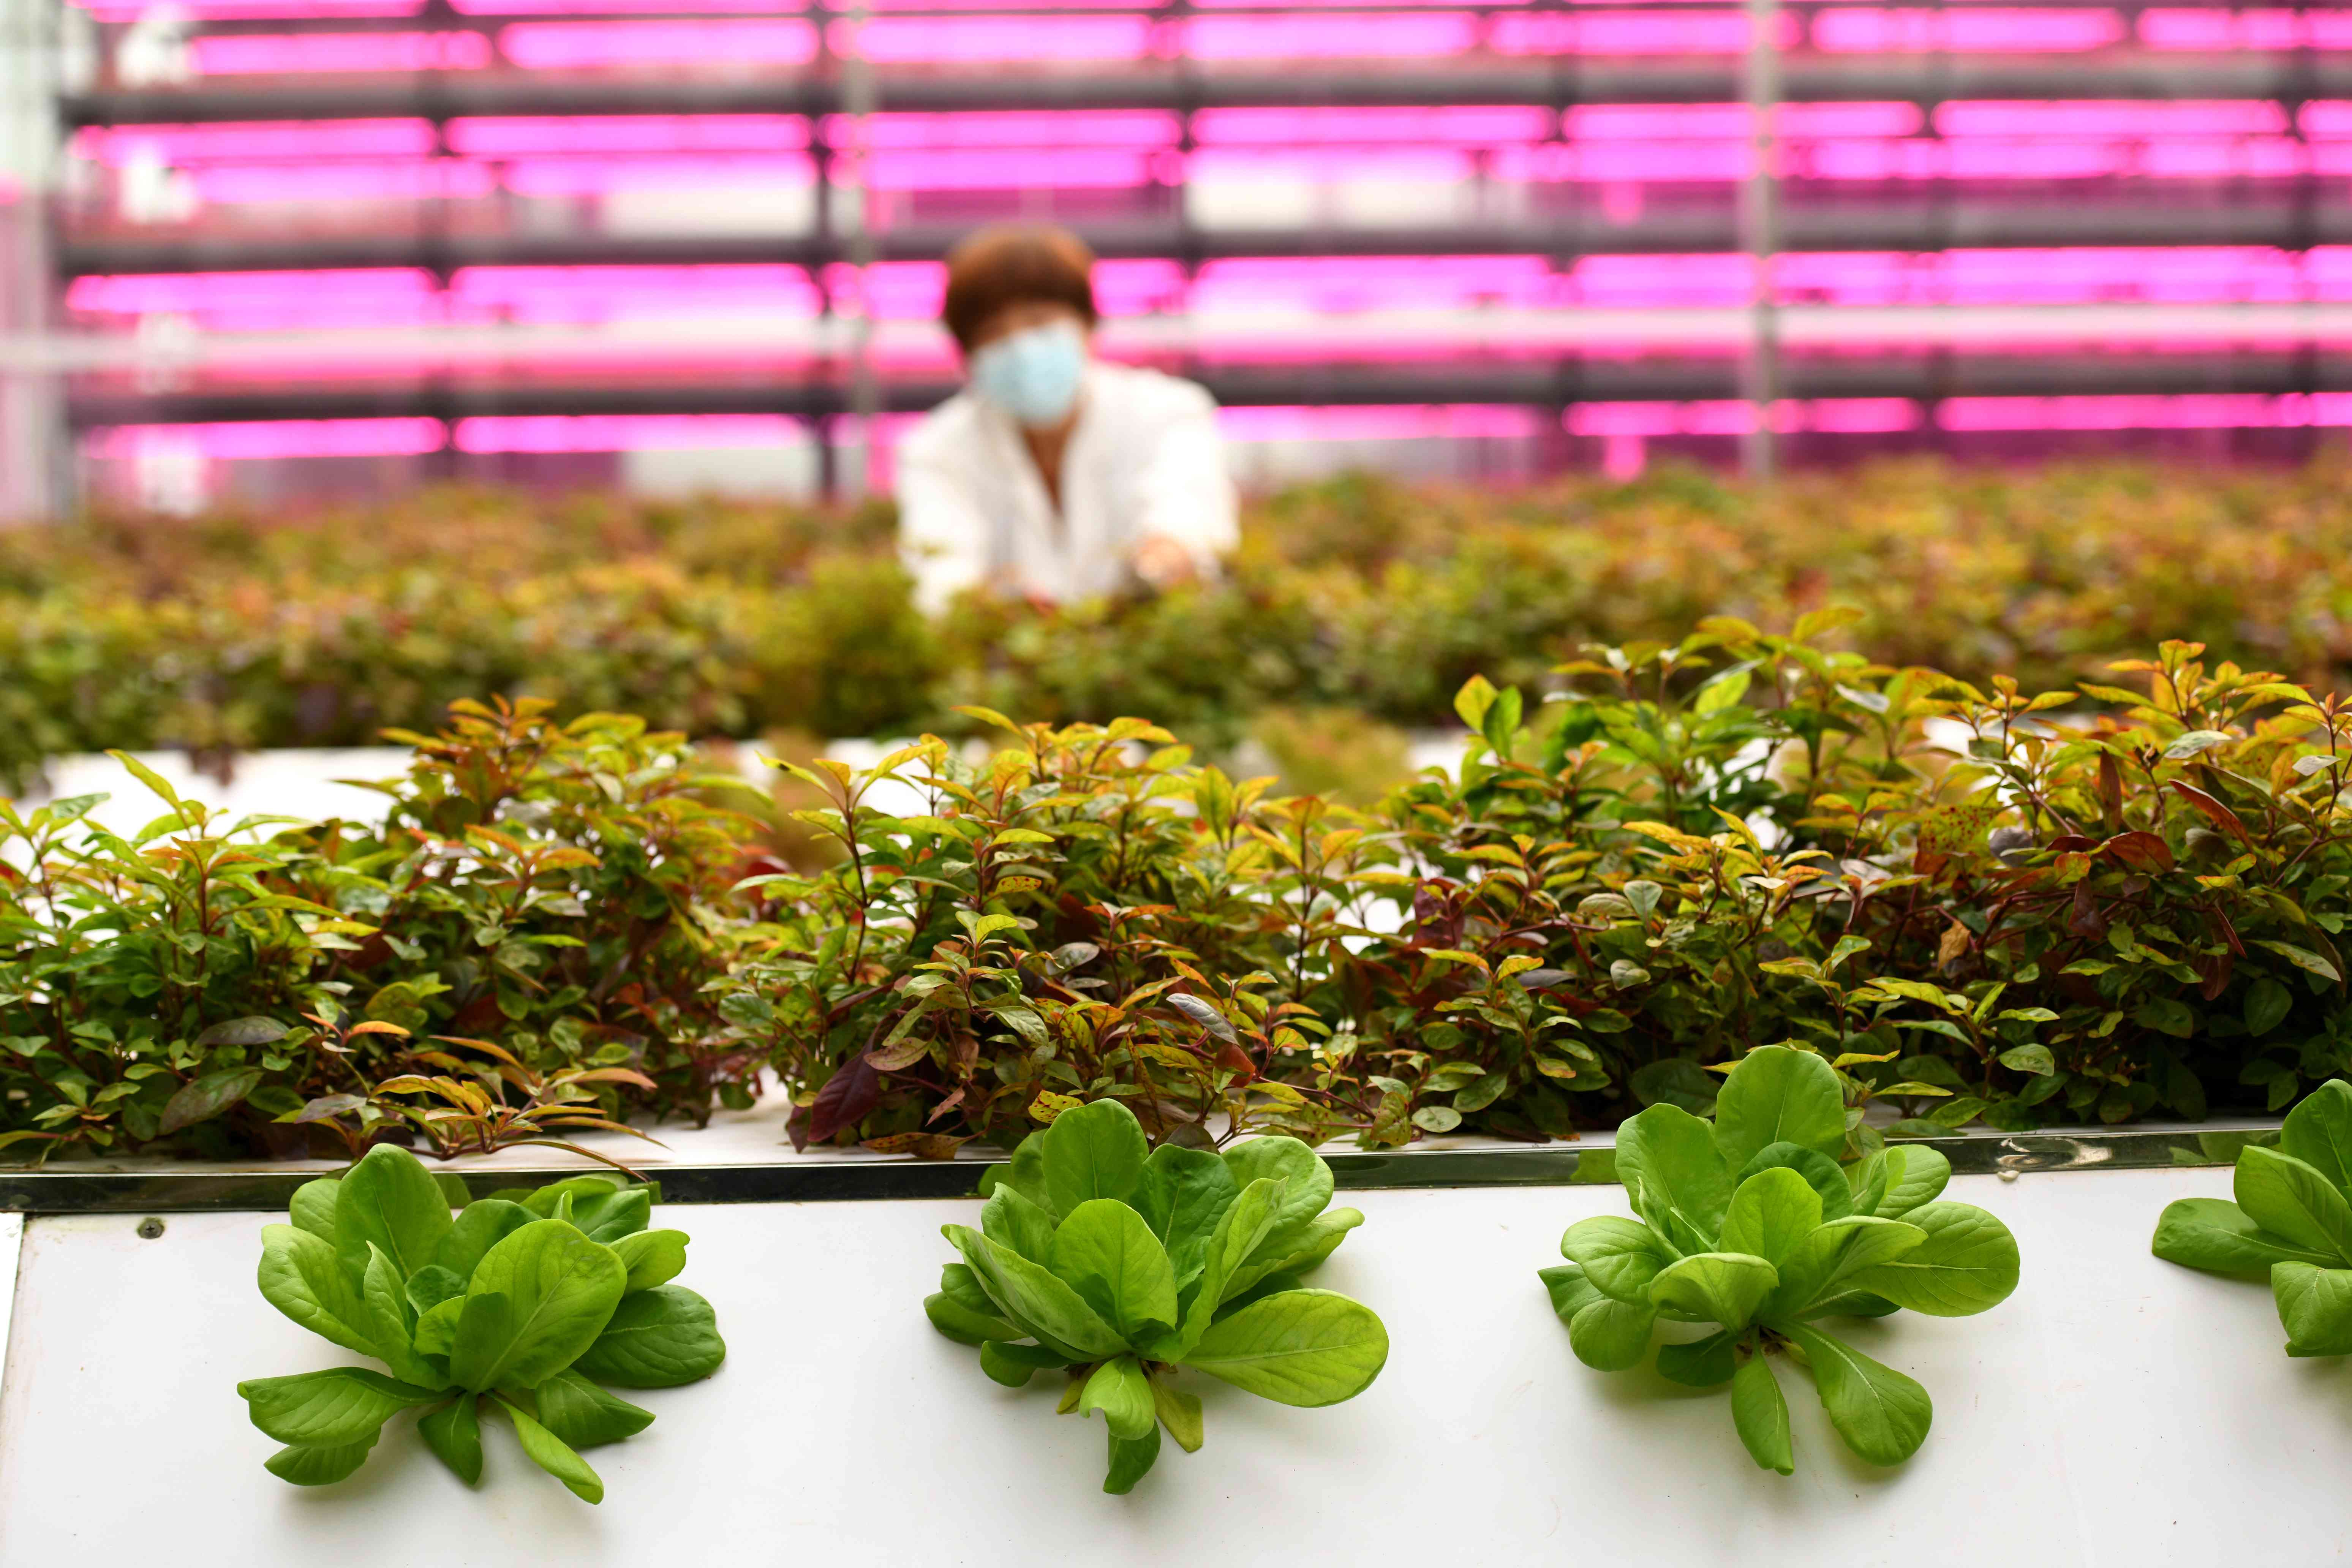 工人在河北省一家“智慧农场”温室内管护蔬菜